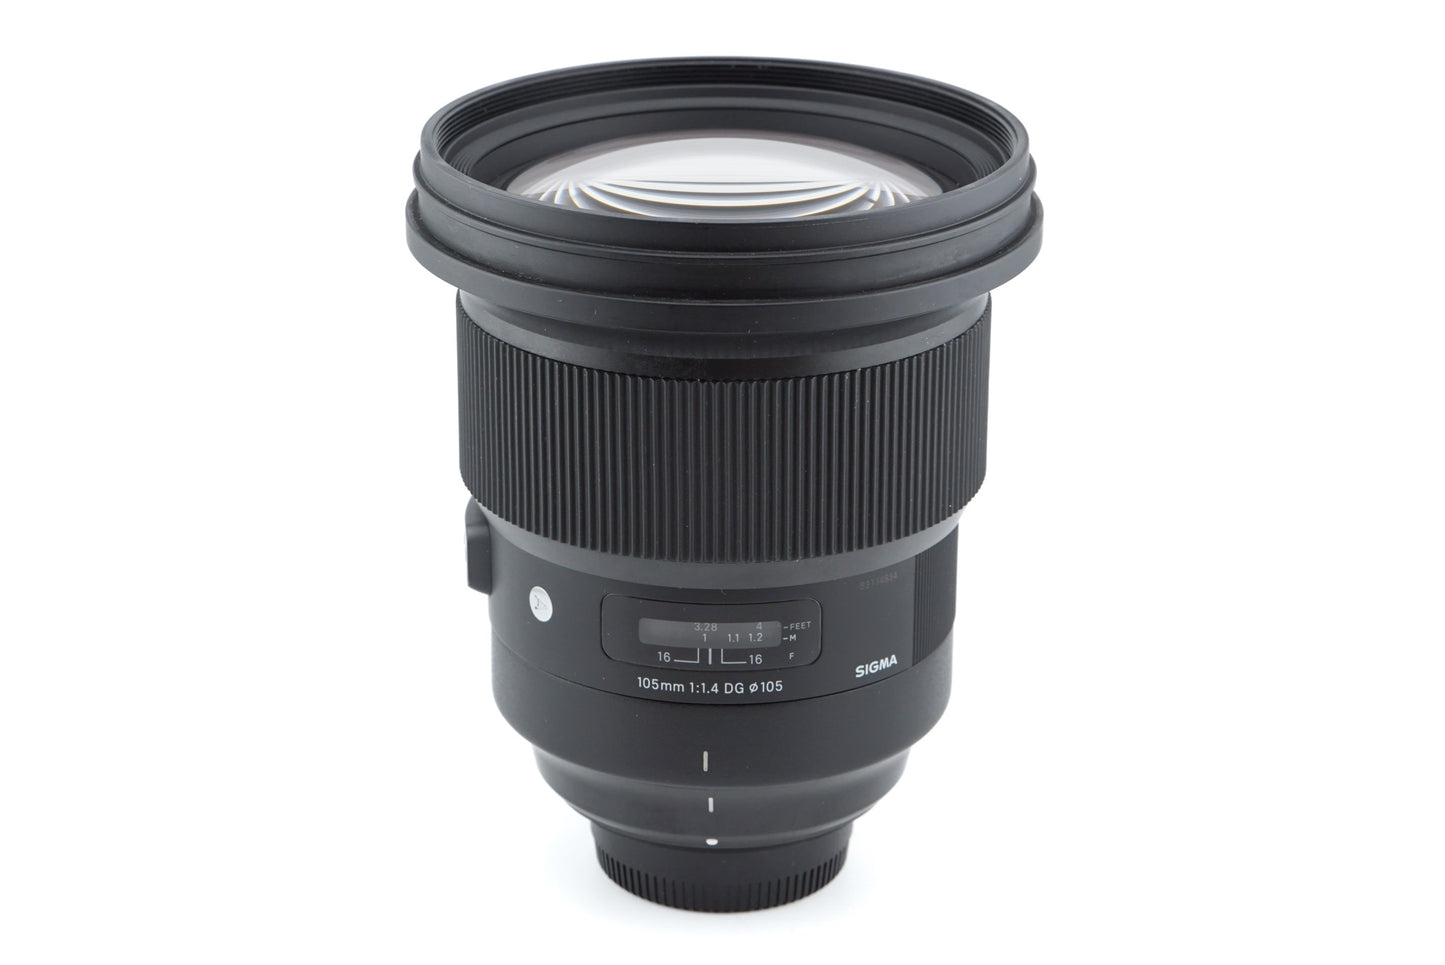 Sigma 105mm f1.4 DG HSM Art (A018) - Lens